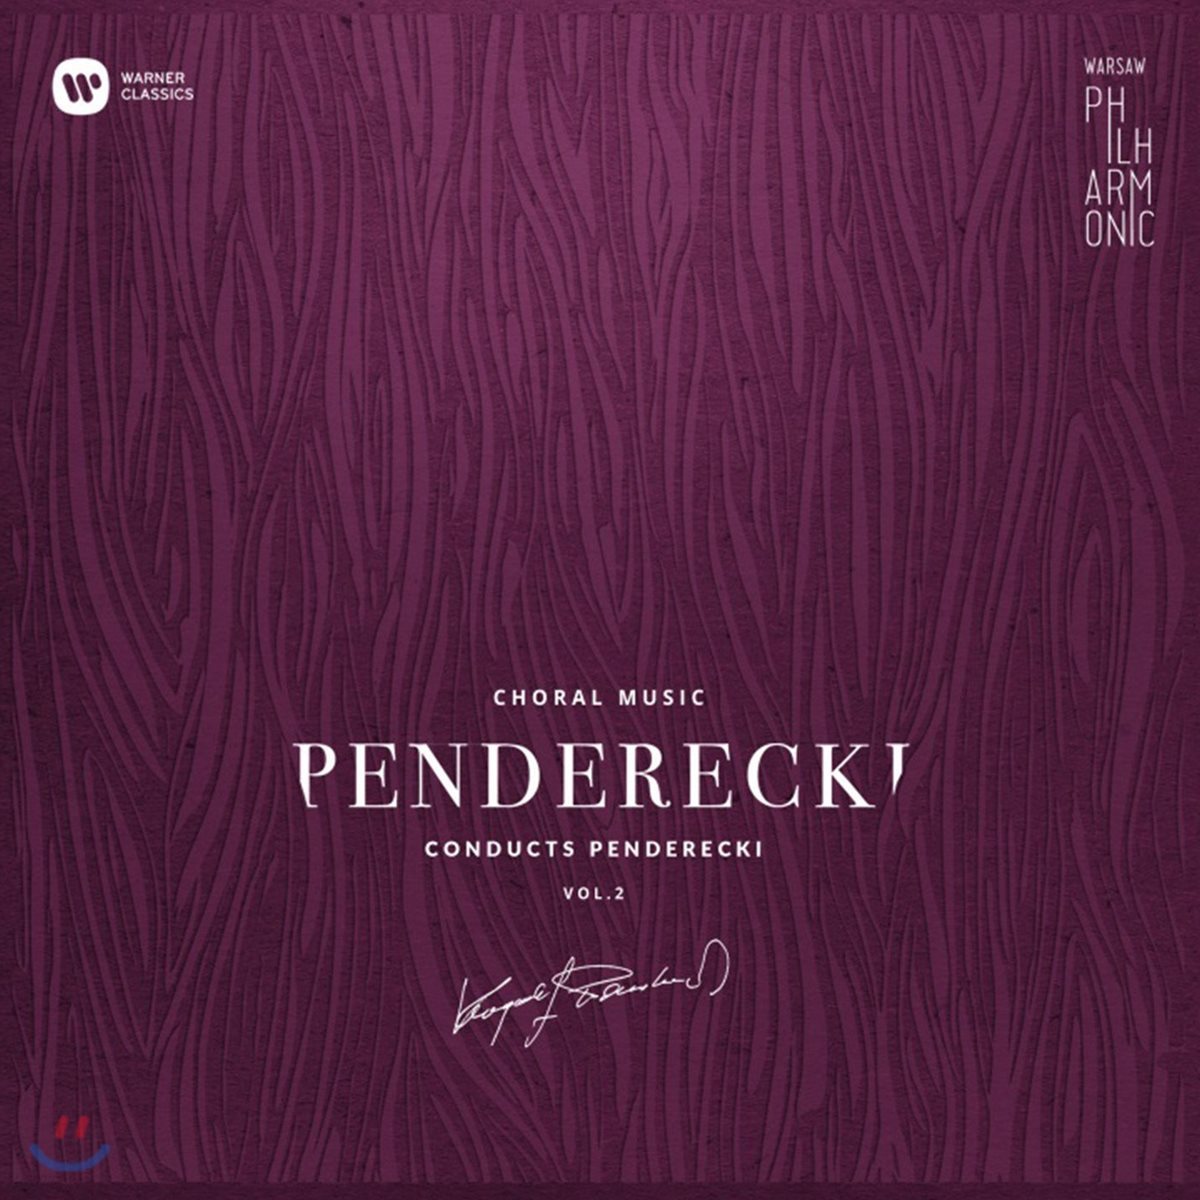 펜데레츠키가 지휘하는 펜데레츠키 2집: 합창 음악 (Krzysztof Penderecki Vol.2: Choral Music)